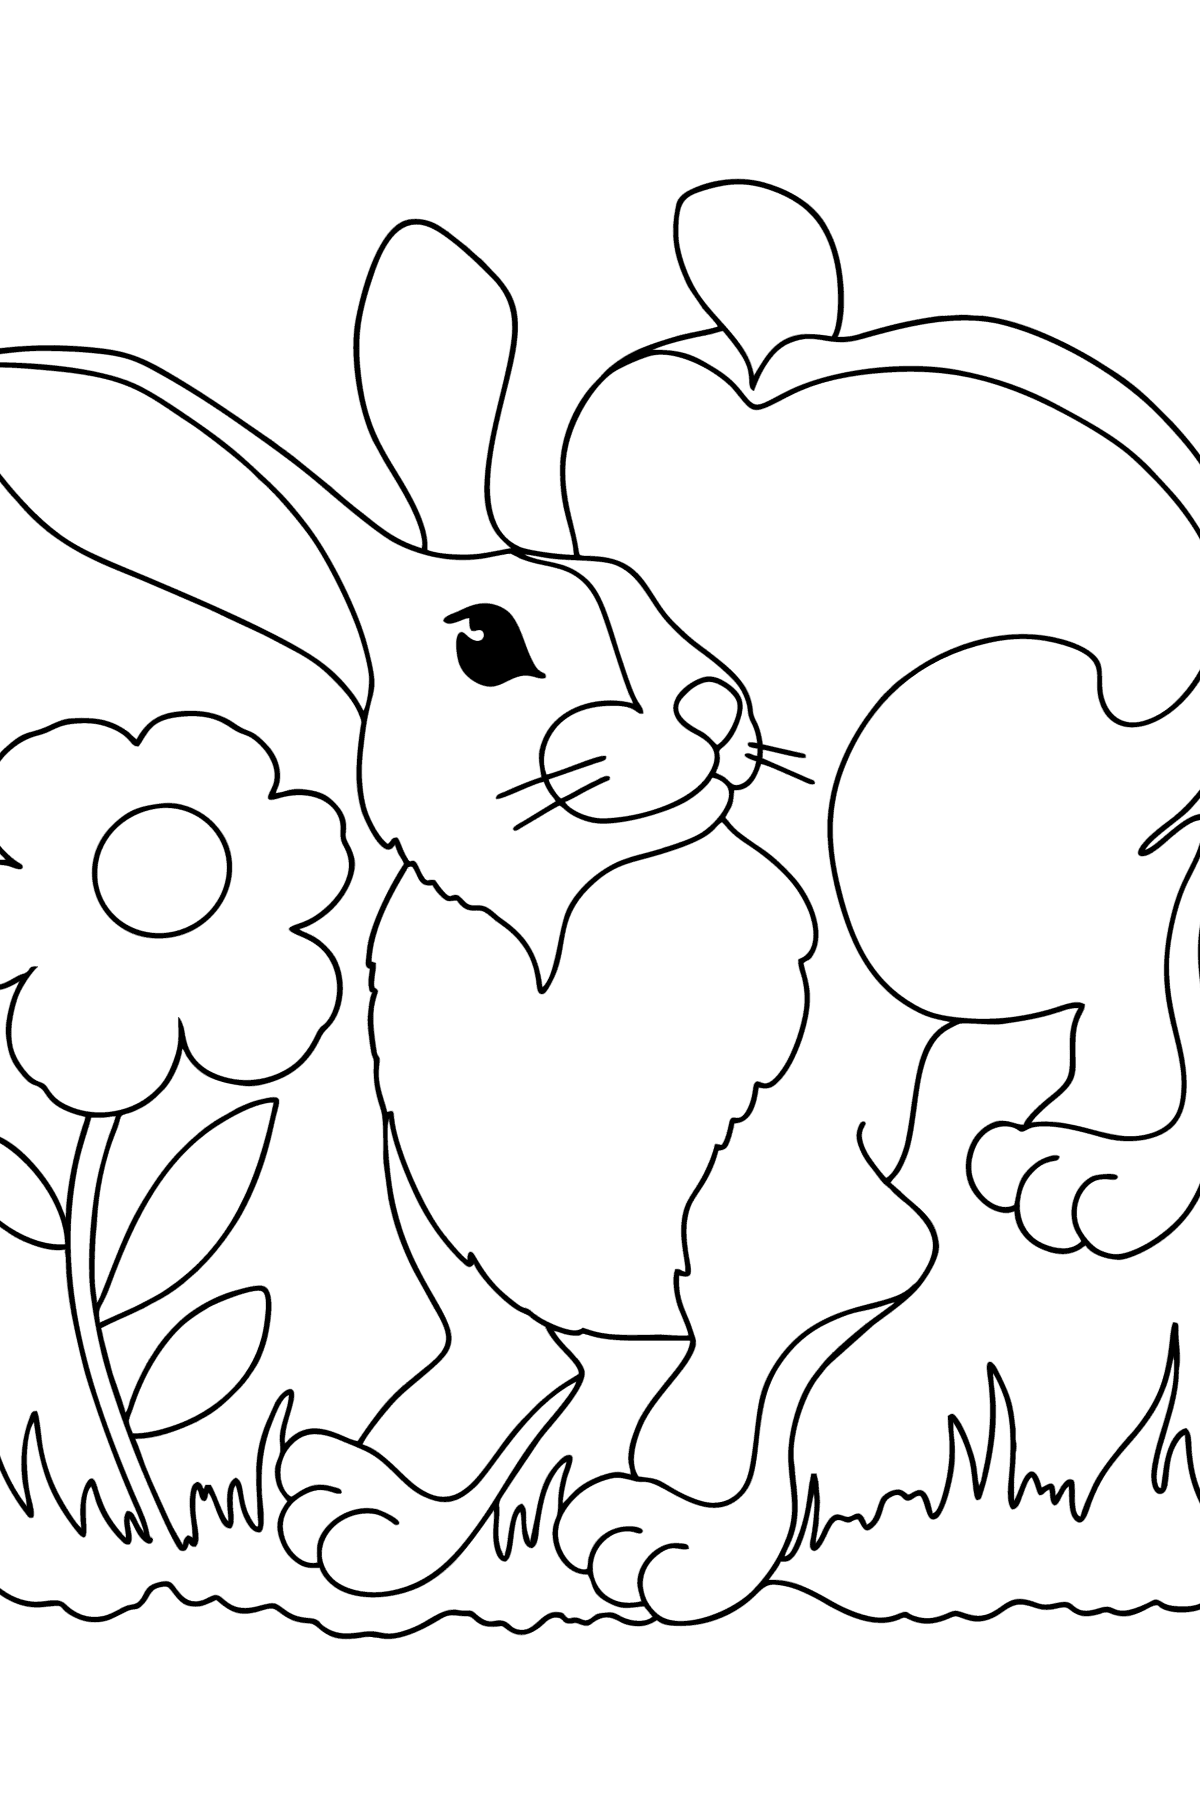 Tegning til fargelegging lille kanin - Tegninger til fargelegging for barn